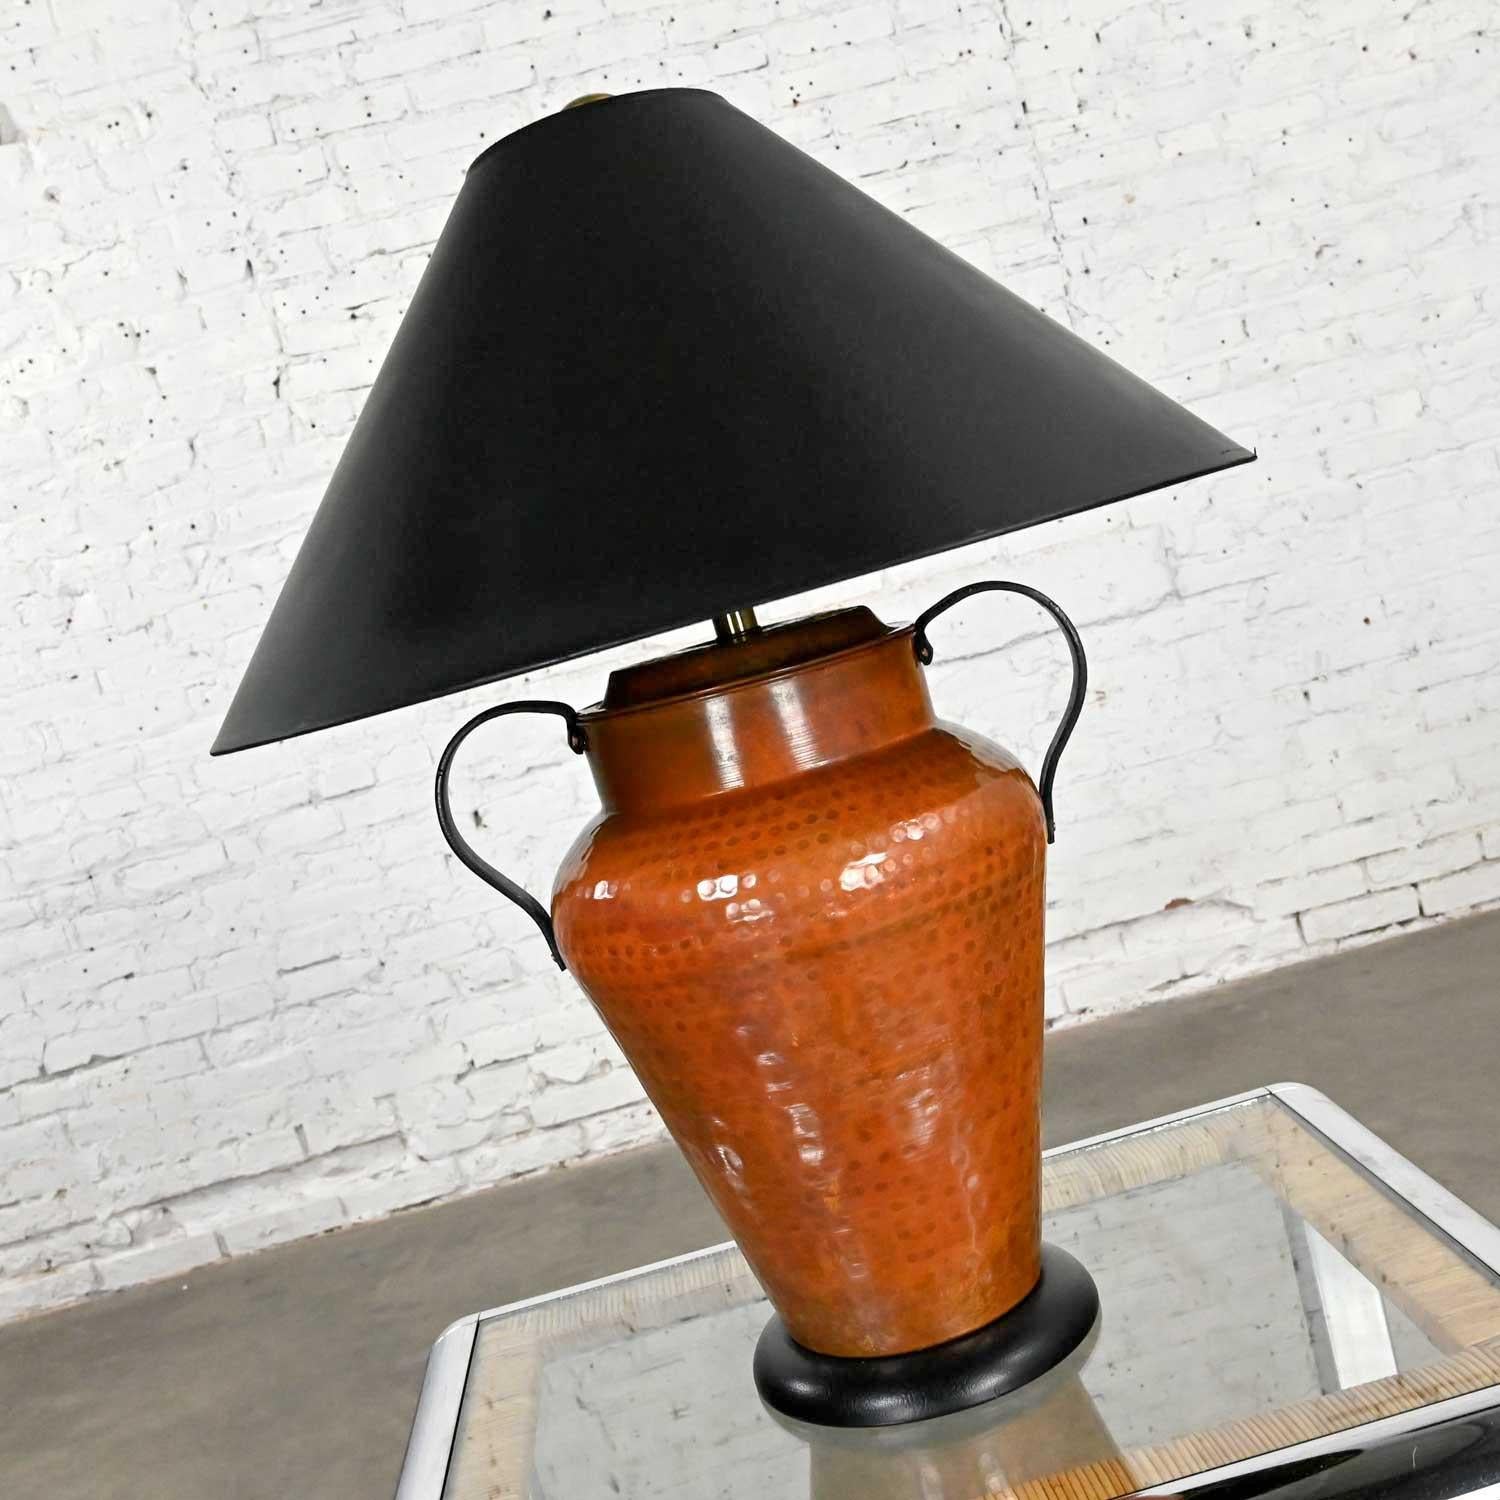 Merveilleuse lampe de style mauresque en cuivre martelé Frederick Cooper en forme d'urne ou de cruche à double poignée avec un abat-jour en coolie noir. Très bon état, tout en gardant à l'esprit qu'il s'agit d'un produit vintage et non neuf, qui